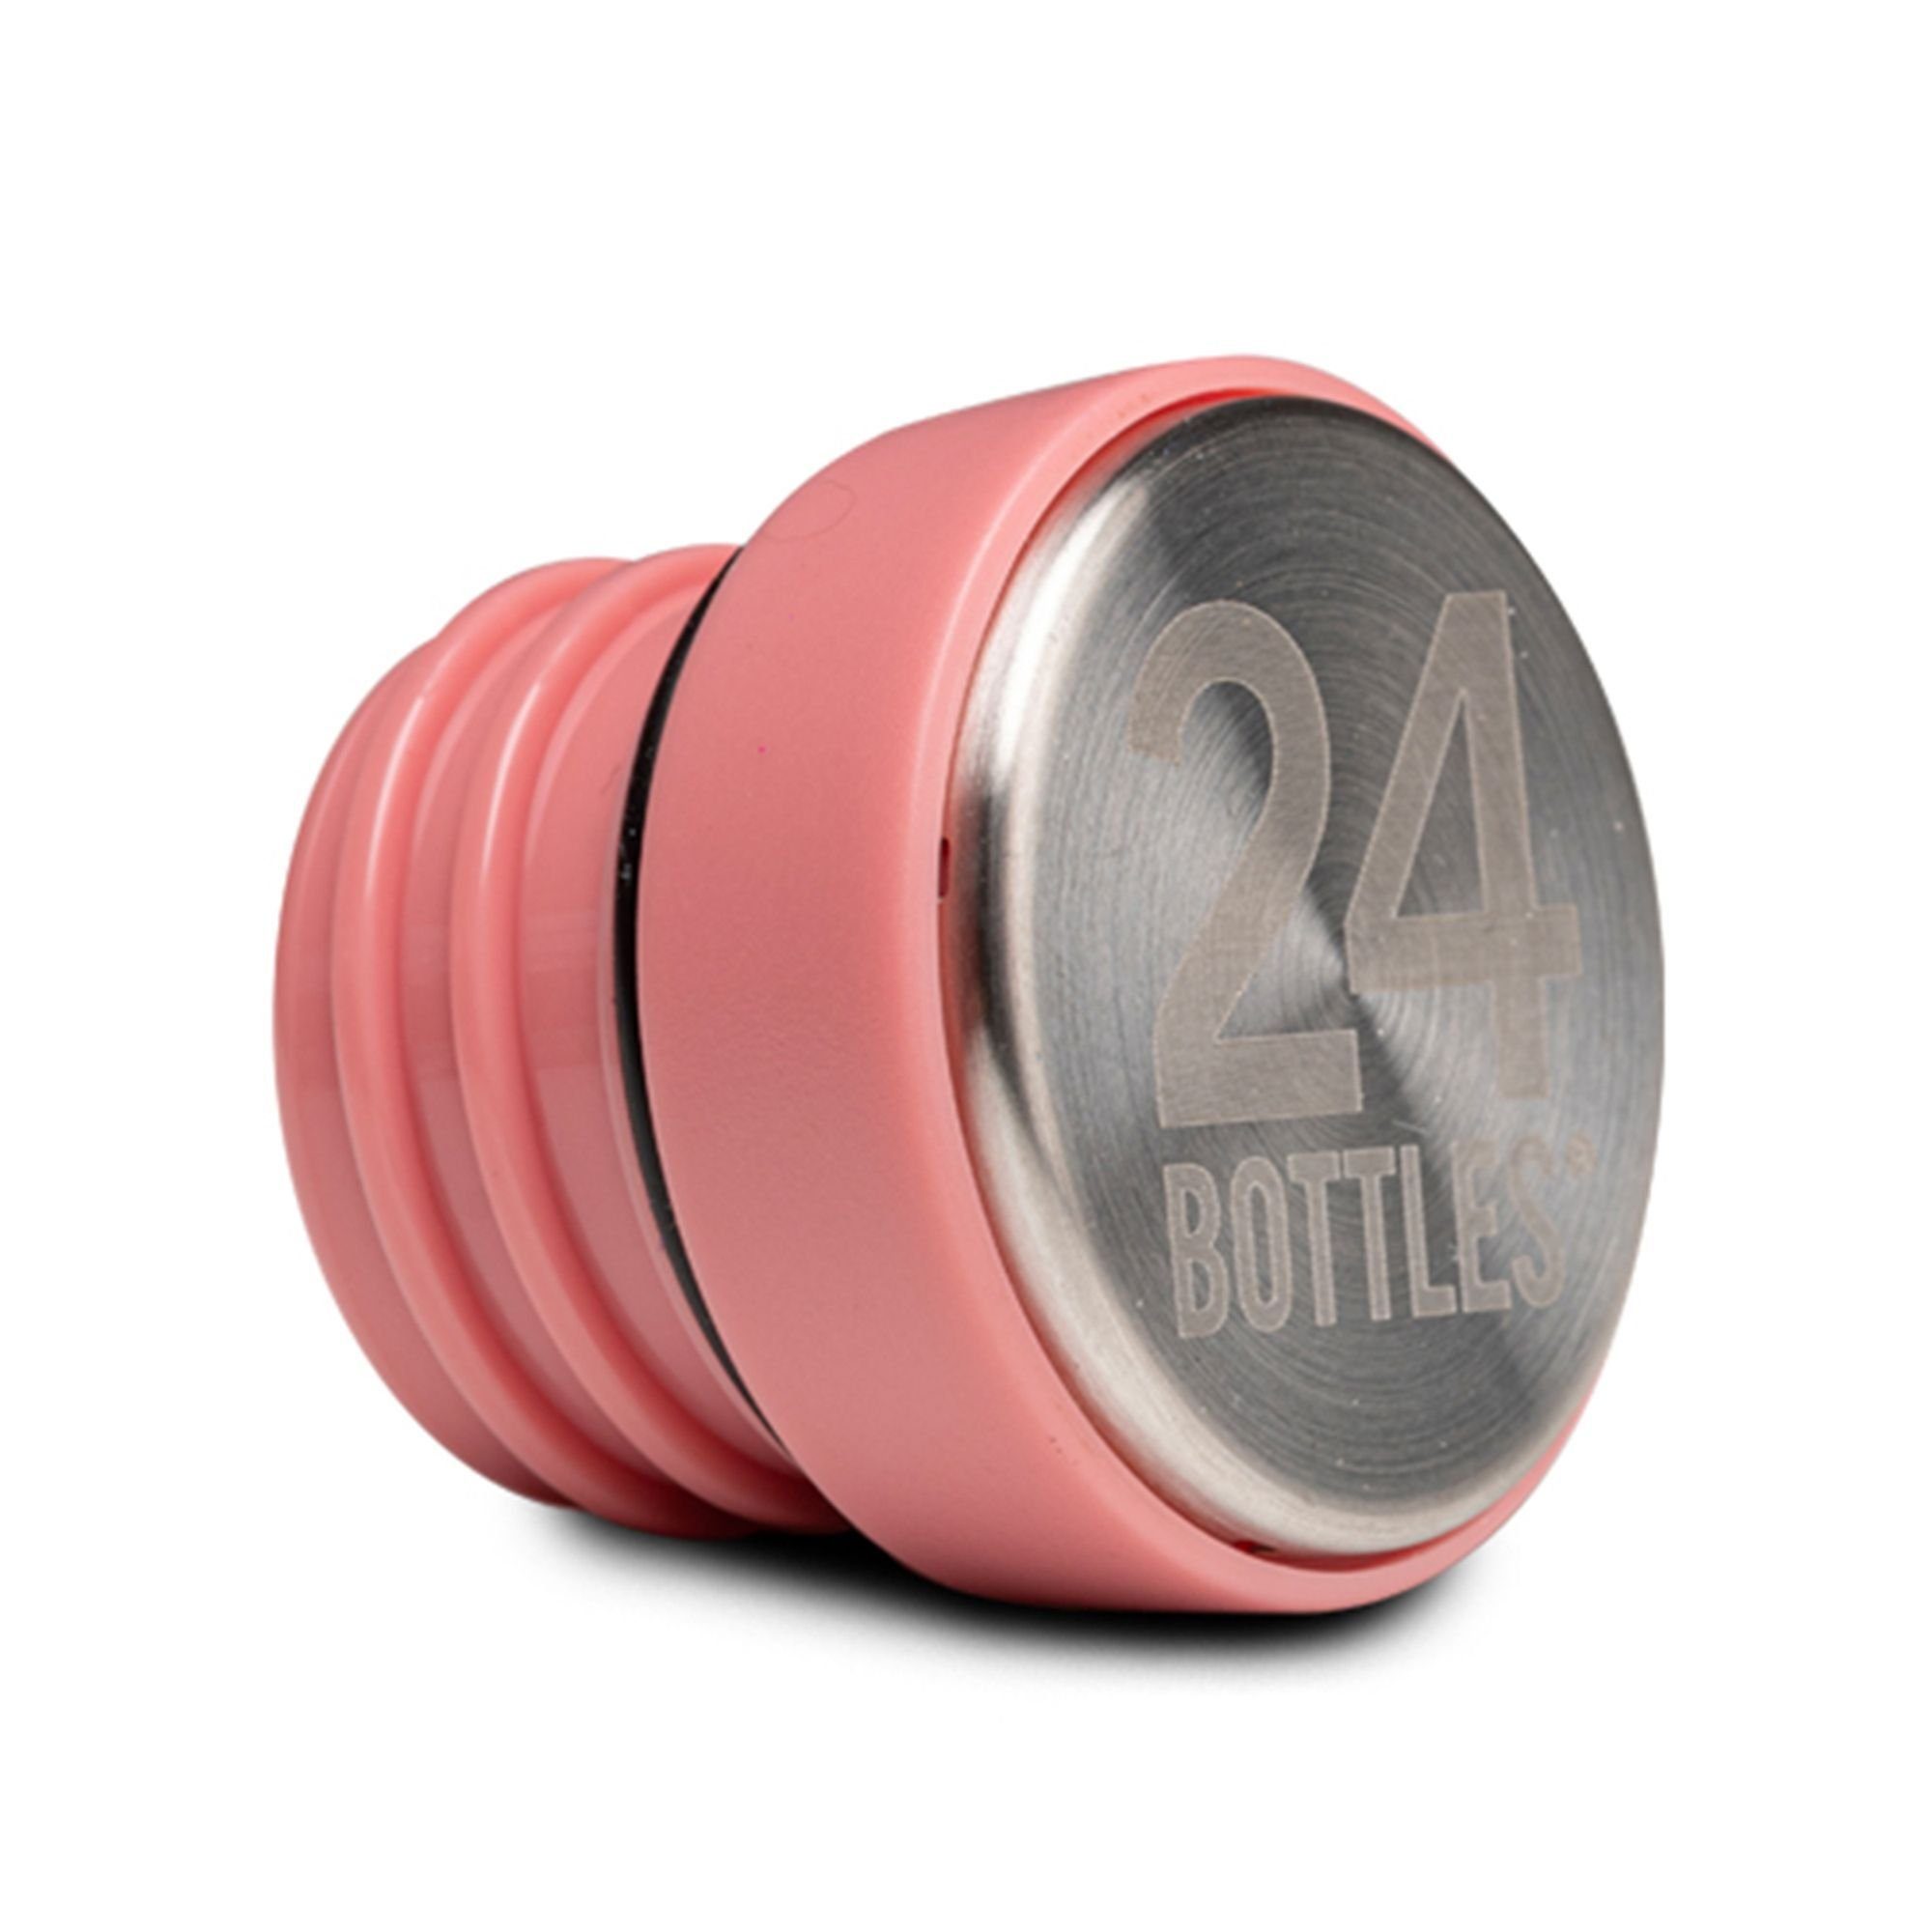 24 Bottles Trinkflasche Accessoires light pink